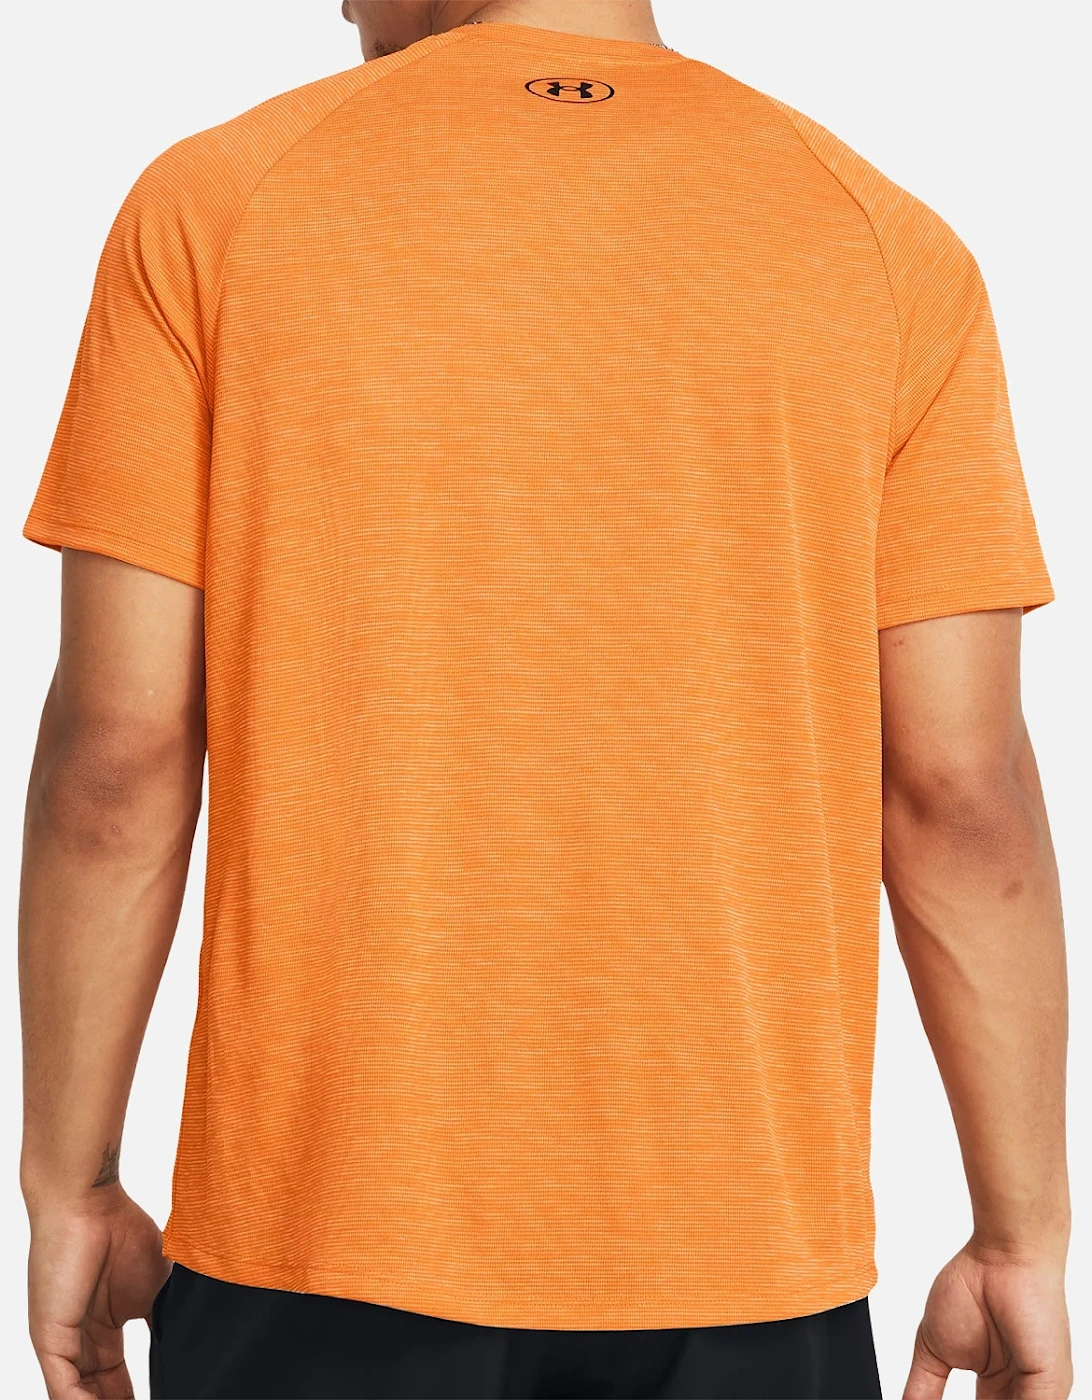 Mens Tech Textured T-Shirt (Orange)